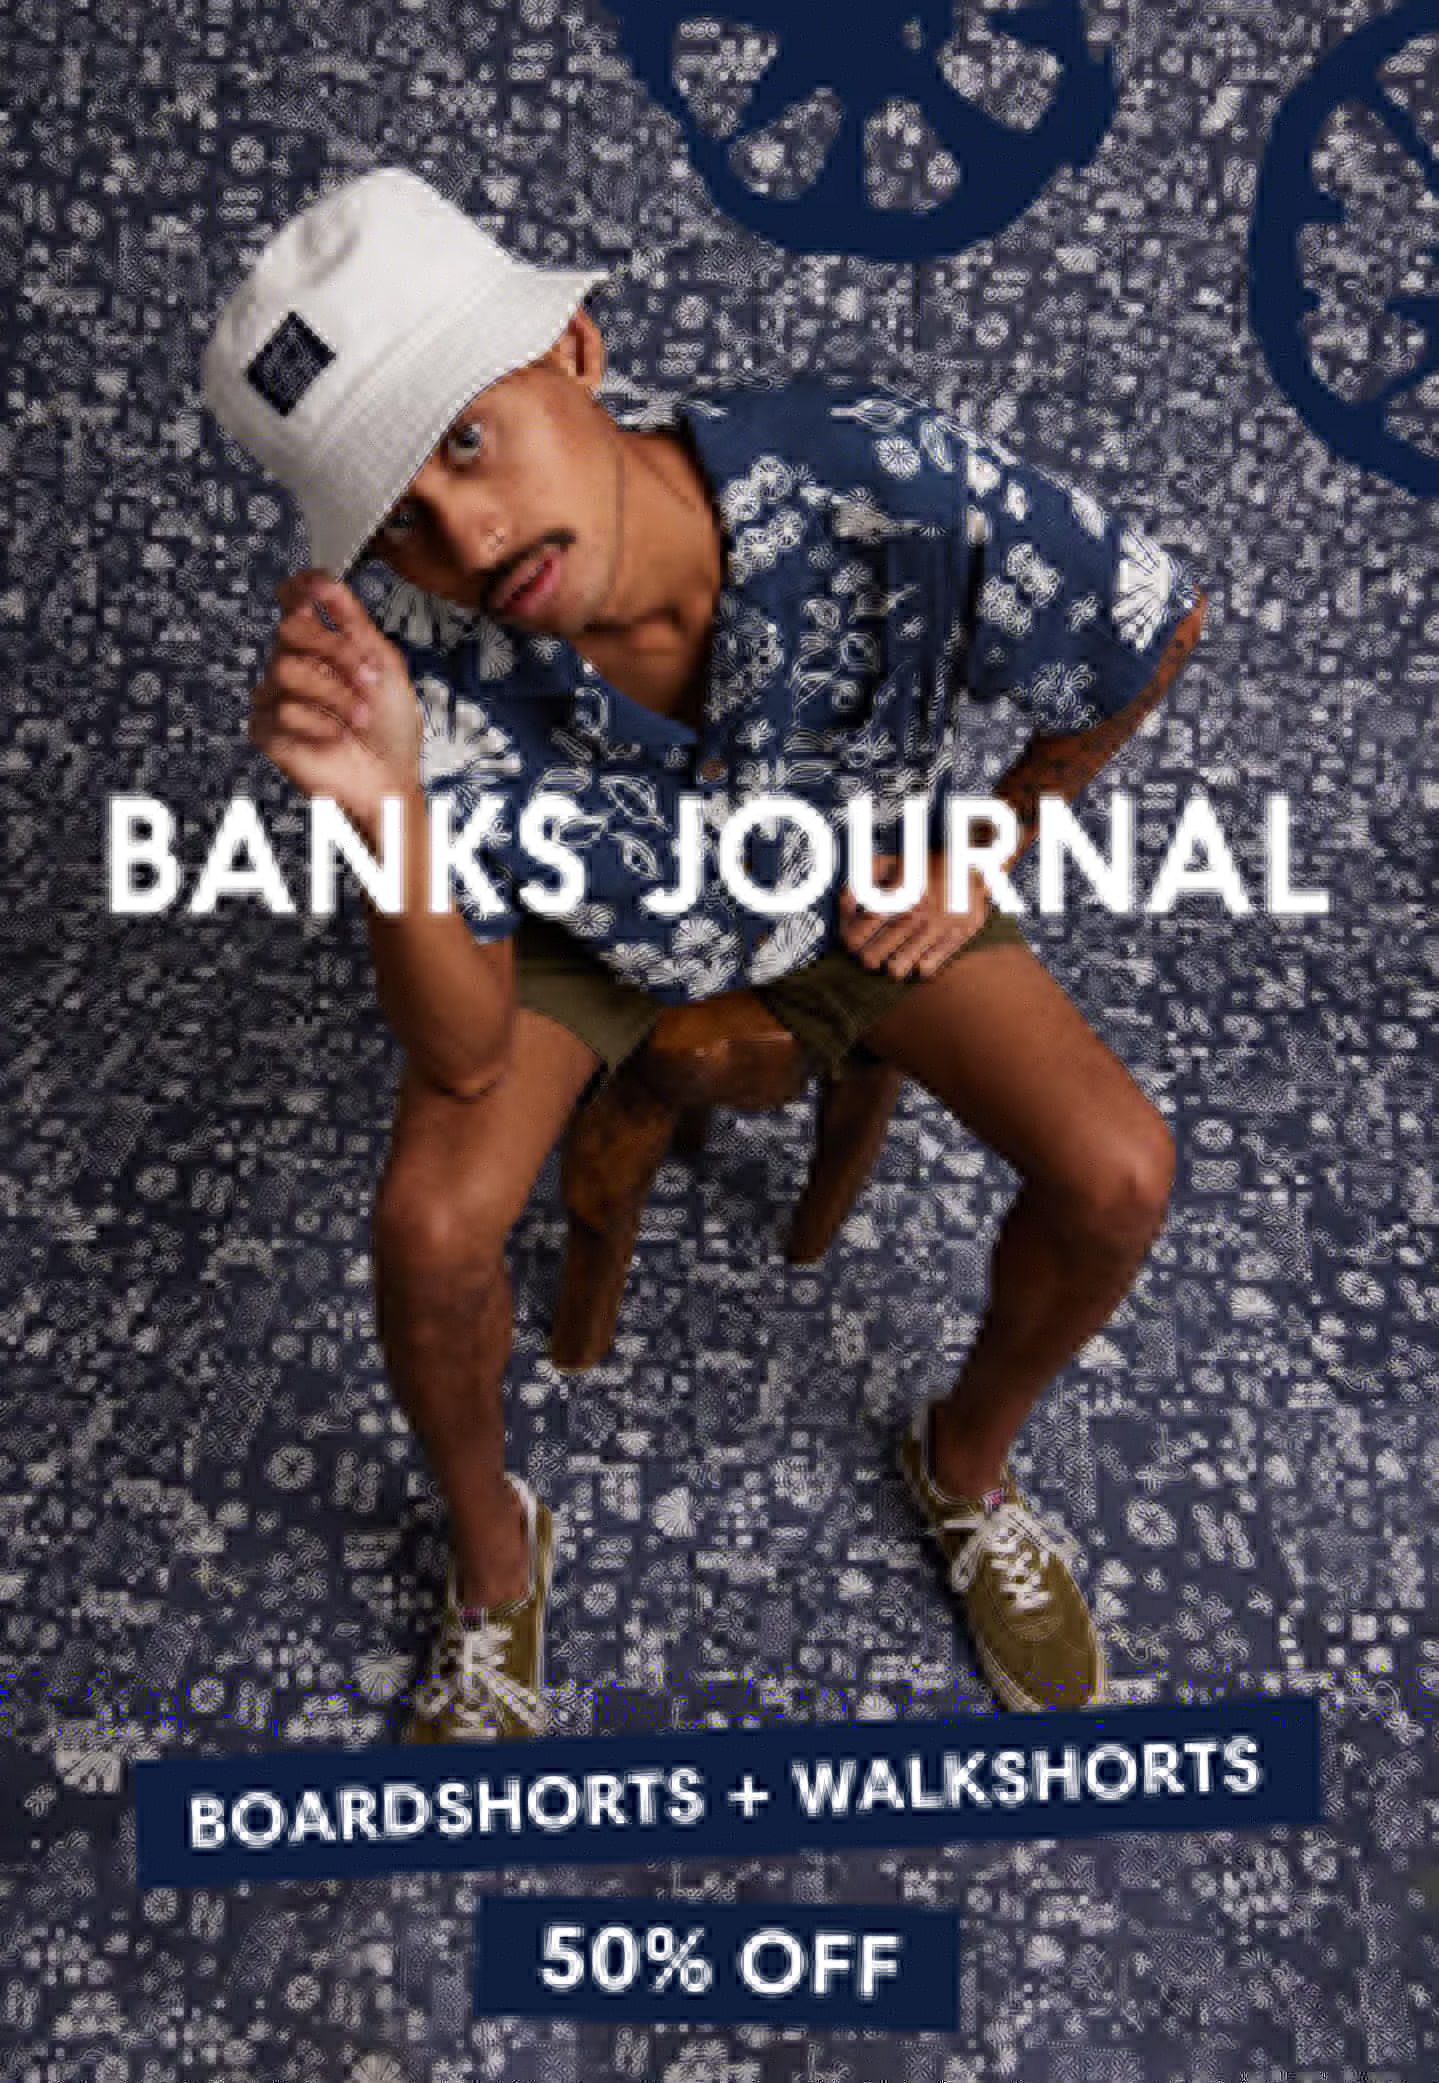 Banks Journal